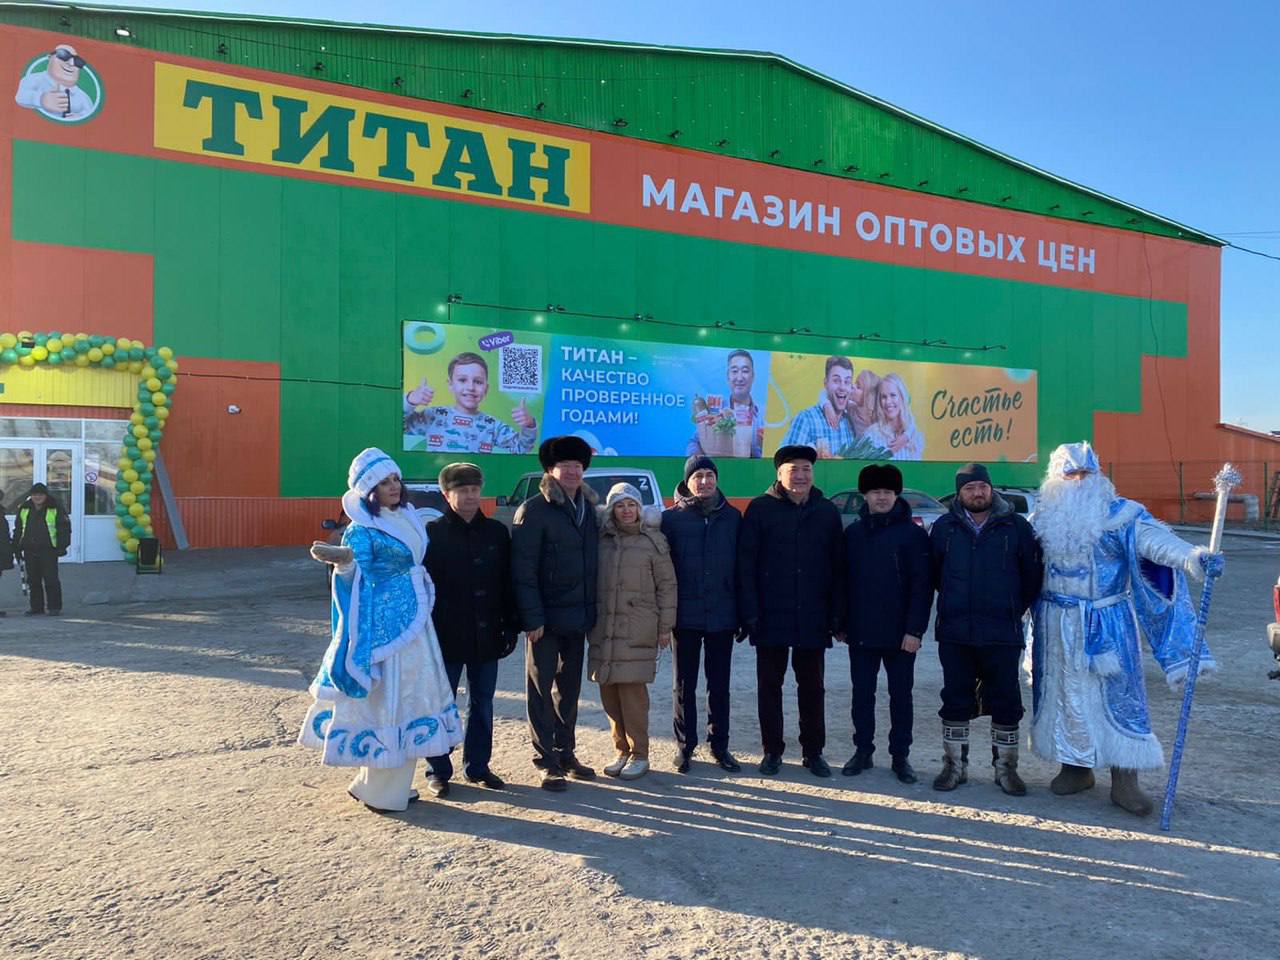 Фото В северном городе Бурятии открылся супермаркет «Титан»